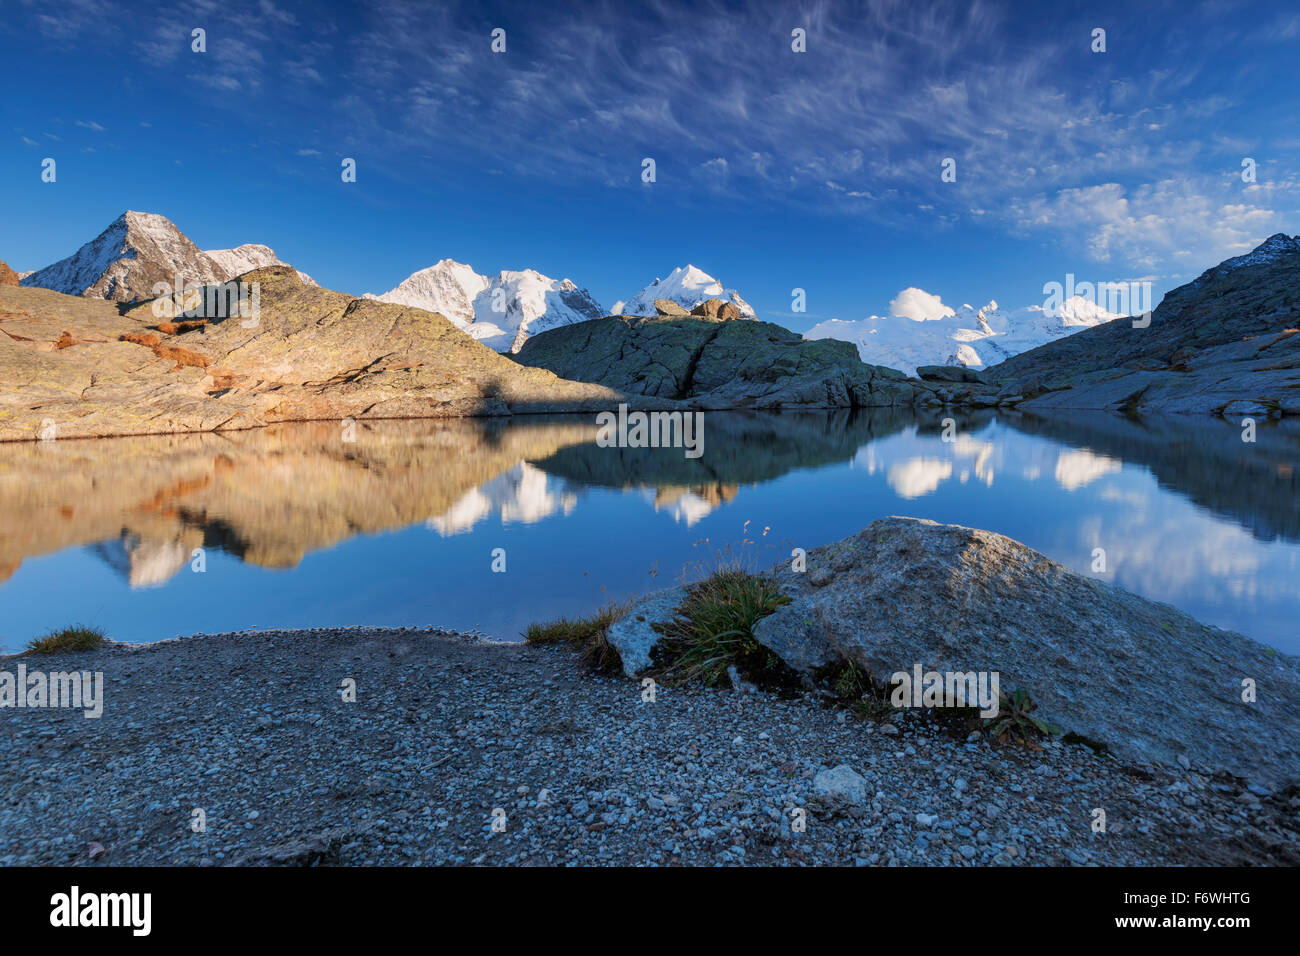 Reflection of Bernina Range on mountain lake, Val Roseg, Engadin, Canton of Grisons, Switzerland Stock Photo